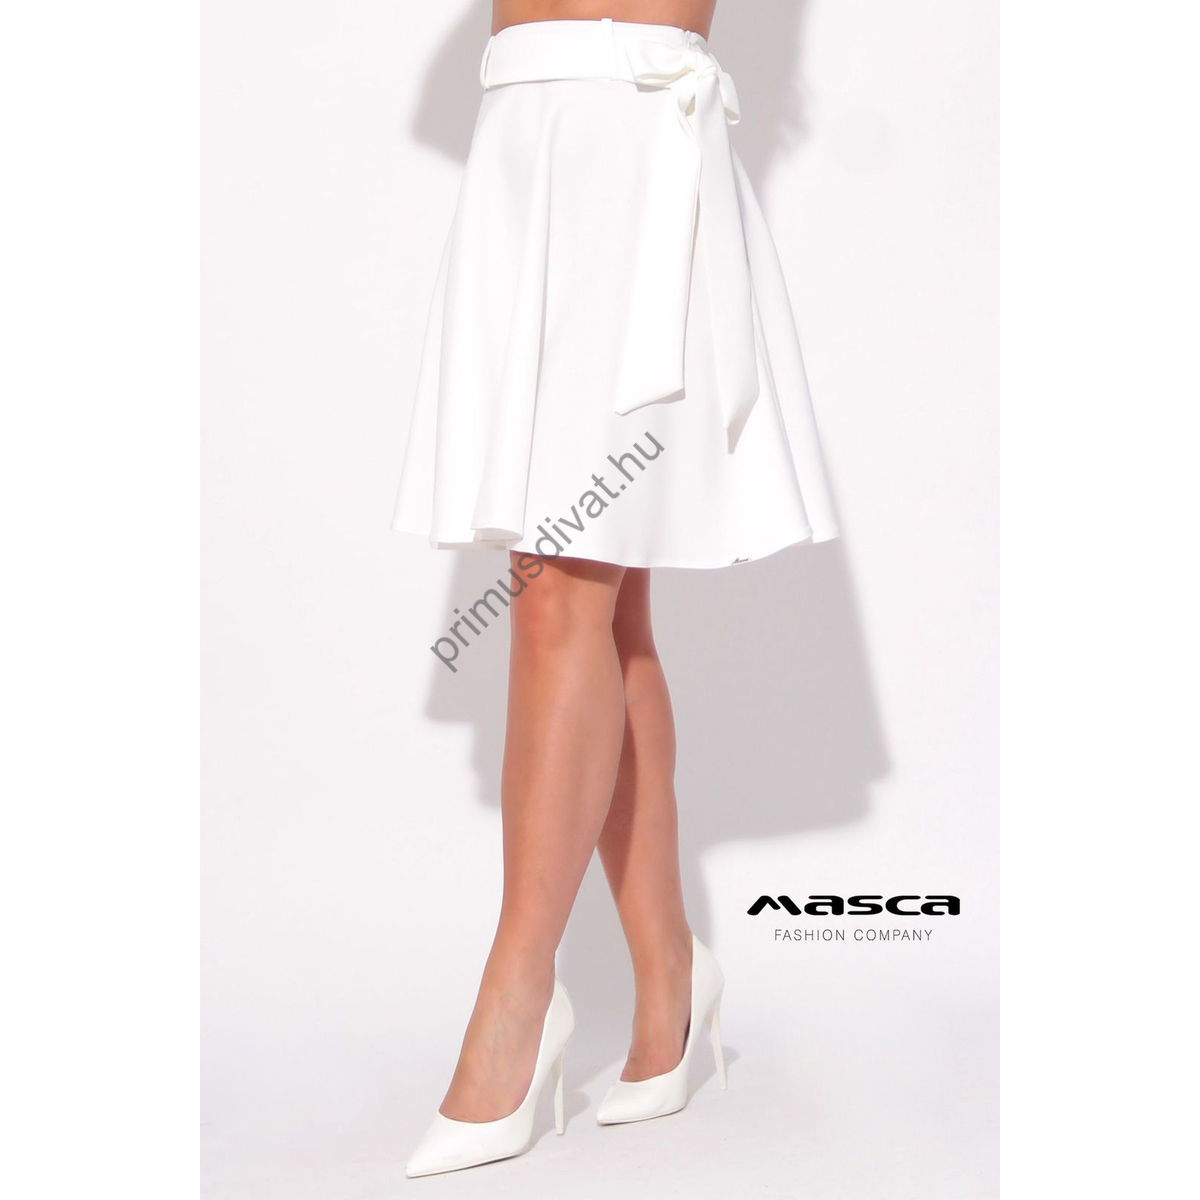 Masca Fashion loknis fehér szoknya, anyagából készült megkötős övvel